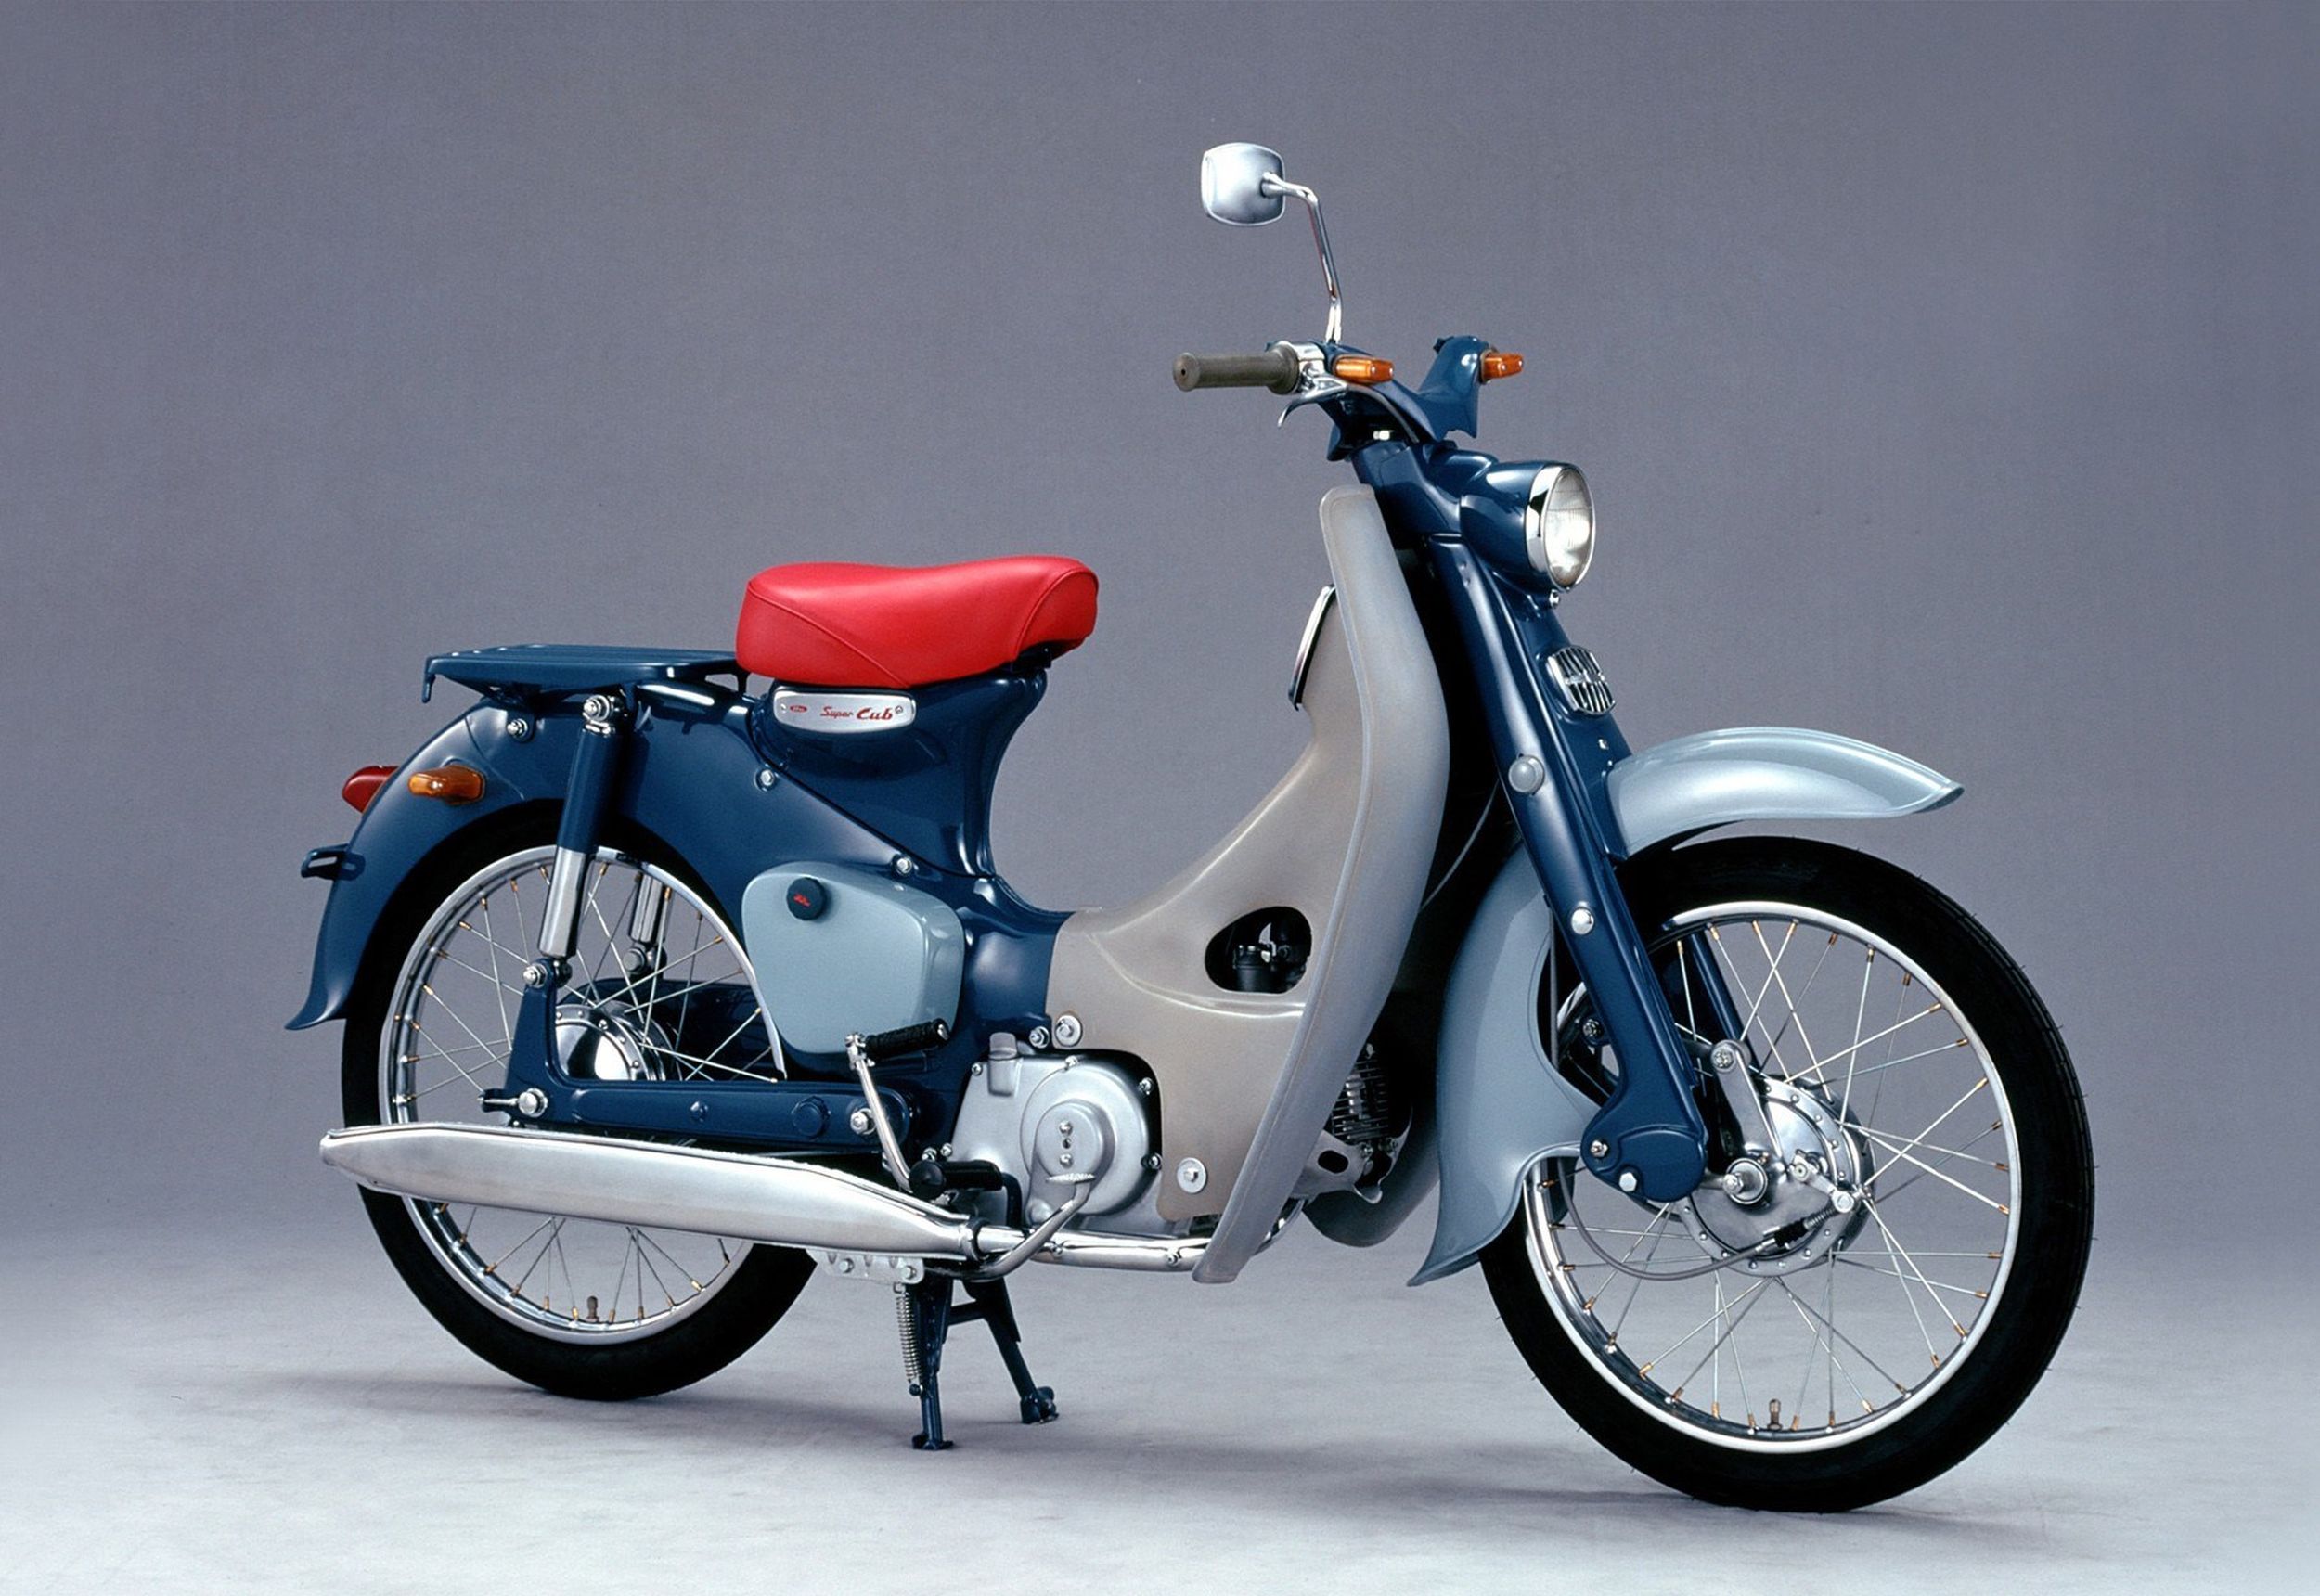 Motorrad Occasion Honda Super Cub C 125 kaufen